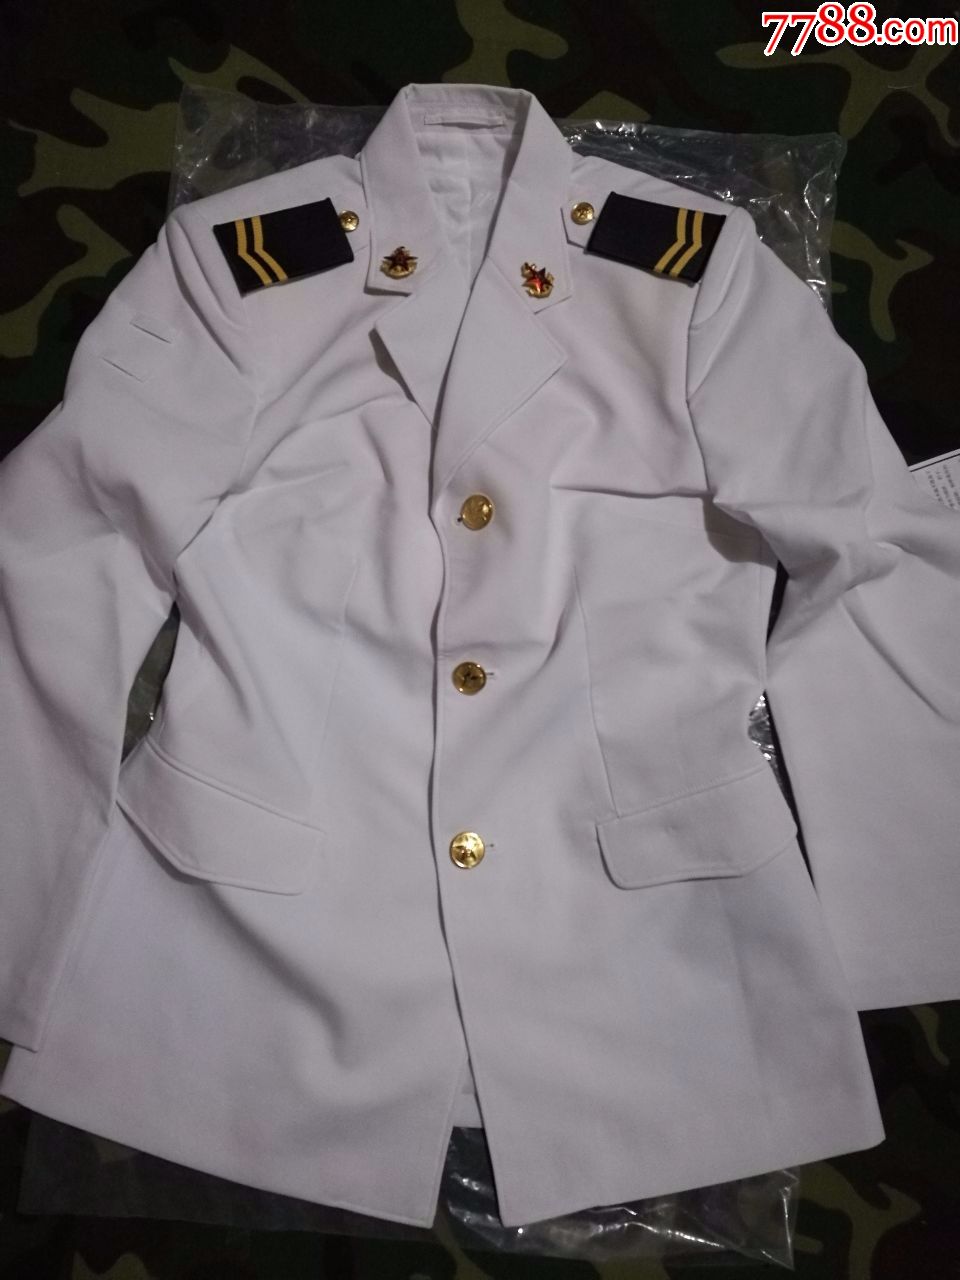 海军短袖夏常服图片图片